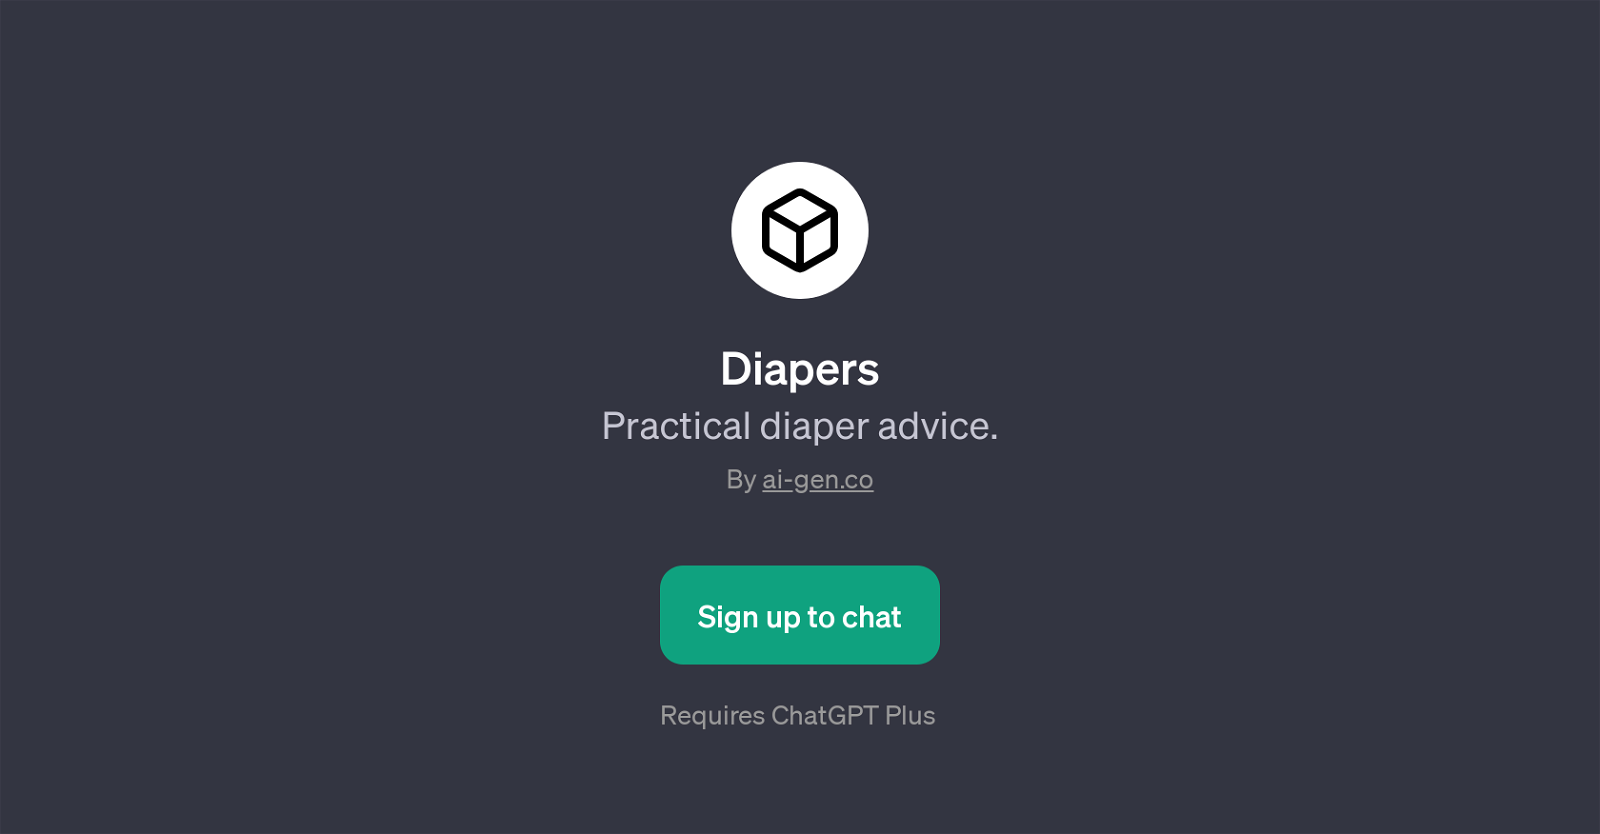 Diapers website